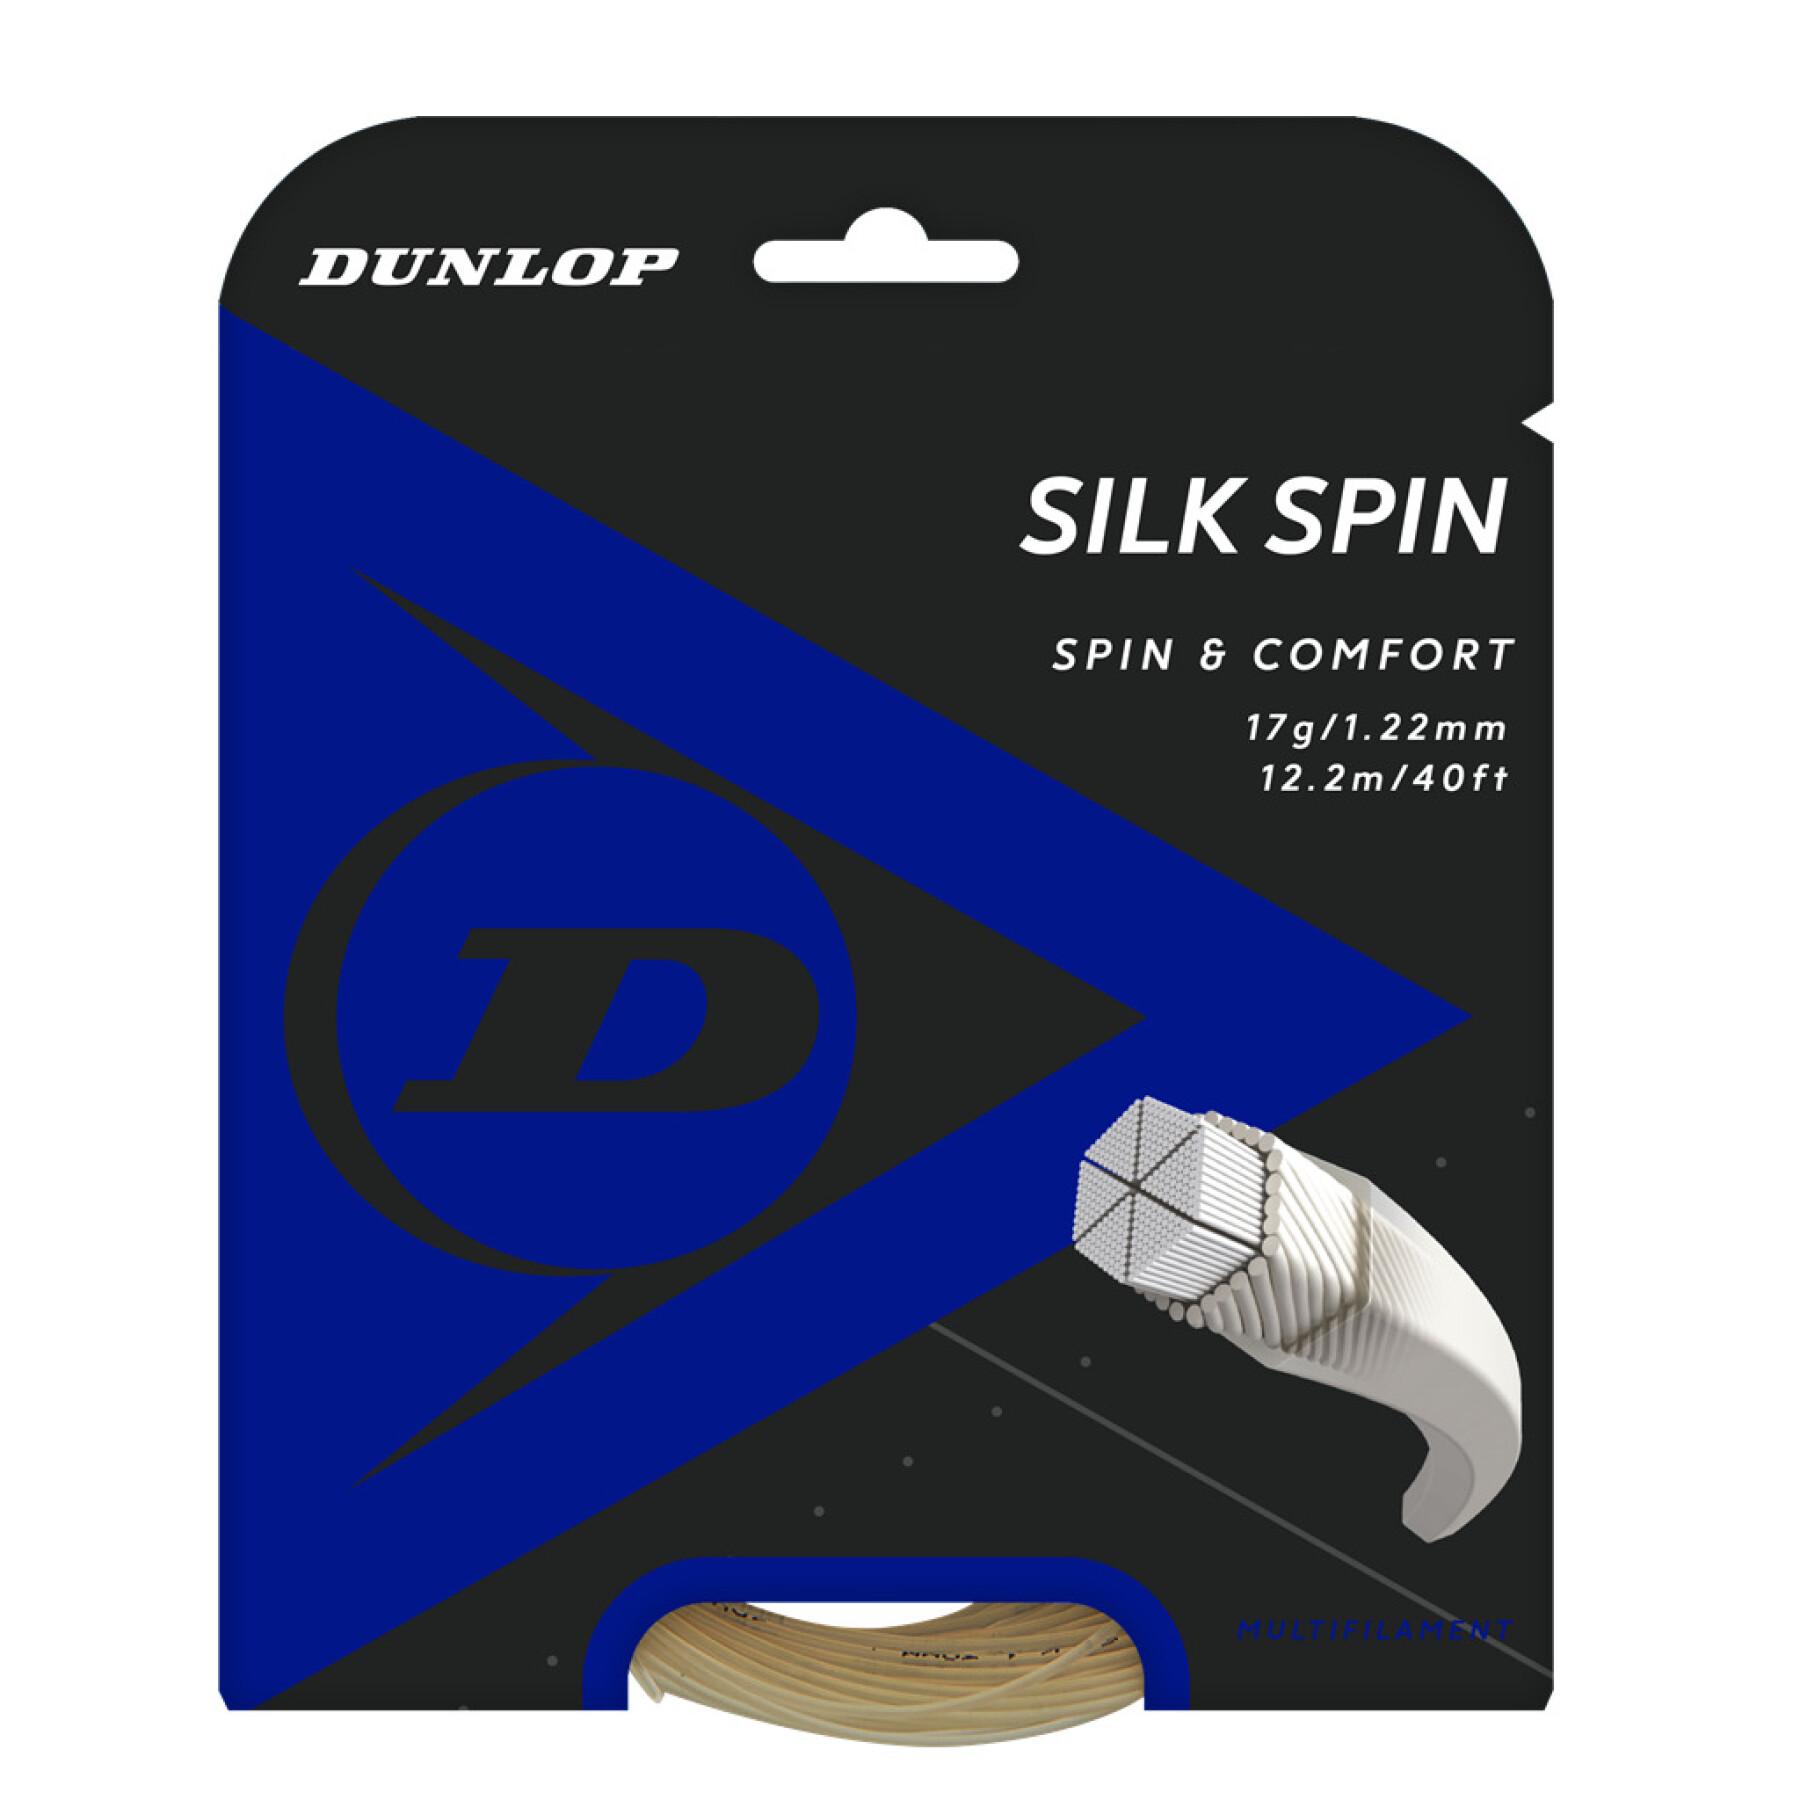 Cuerda Dunlop silk spin